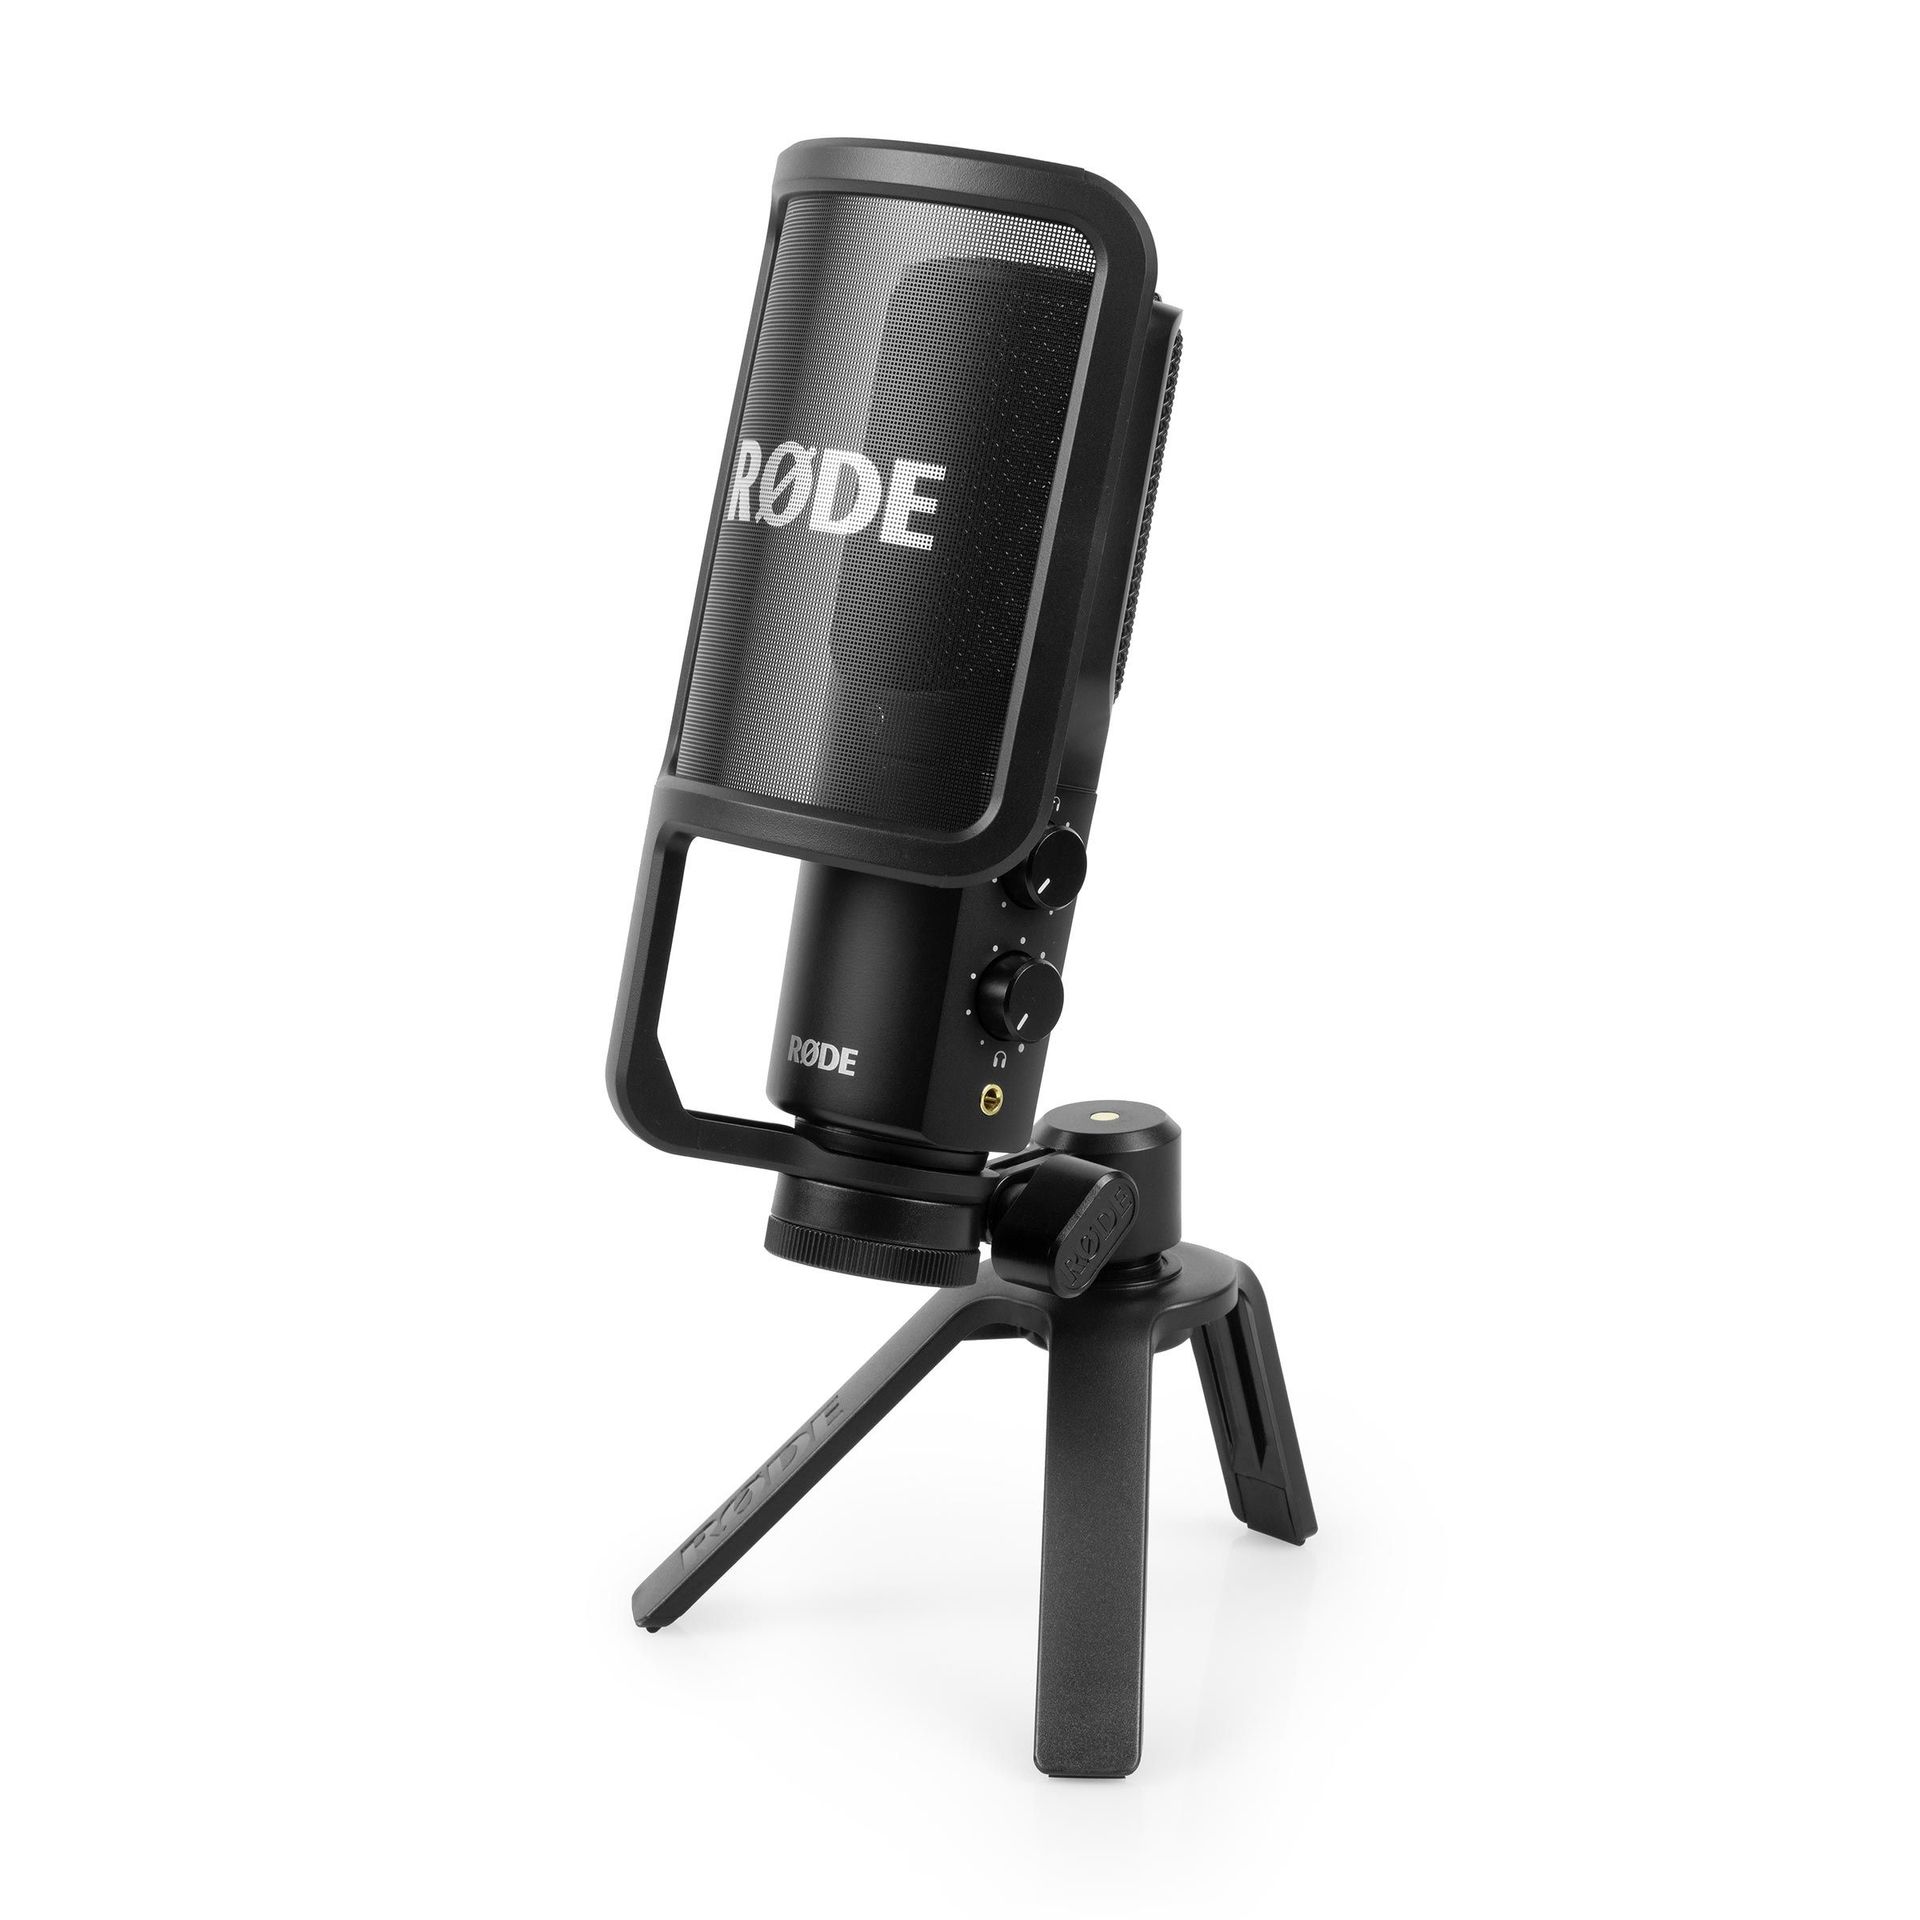 RODE NT-USB+ USB-Kondensatormikrofon für Podcast, Vocals, Akustische Instrument